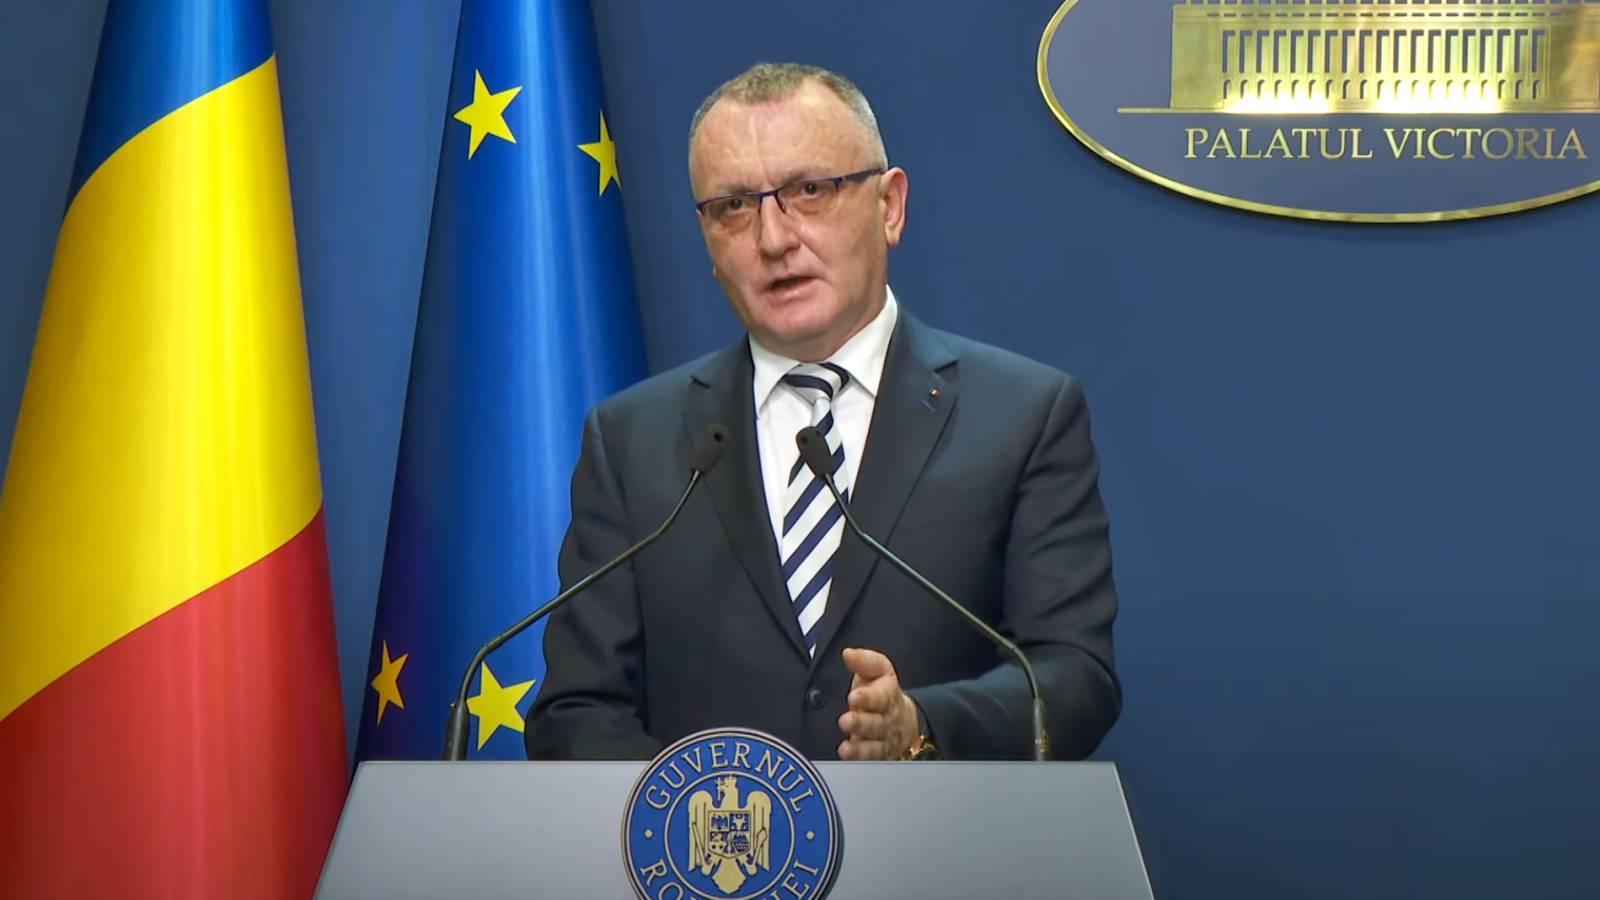 Wichtige Last-Minute-Entscheidung des Bildungsministers wurde den Rumänen bekannt gegeben